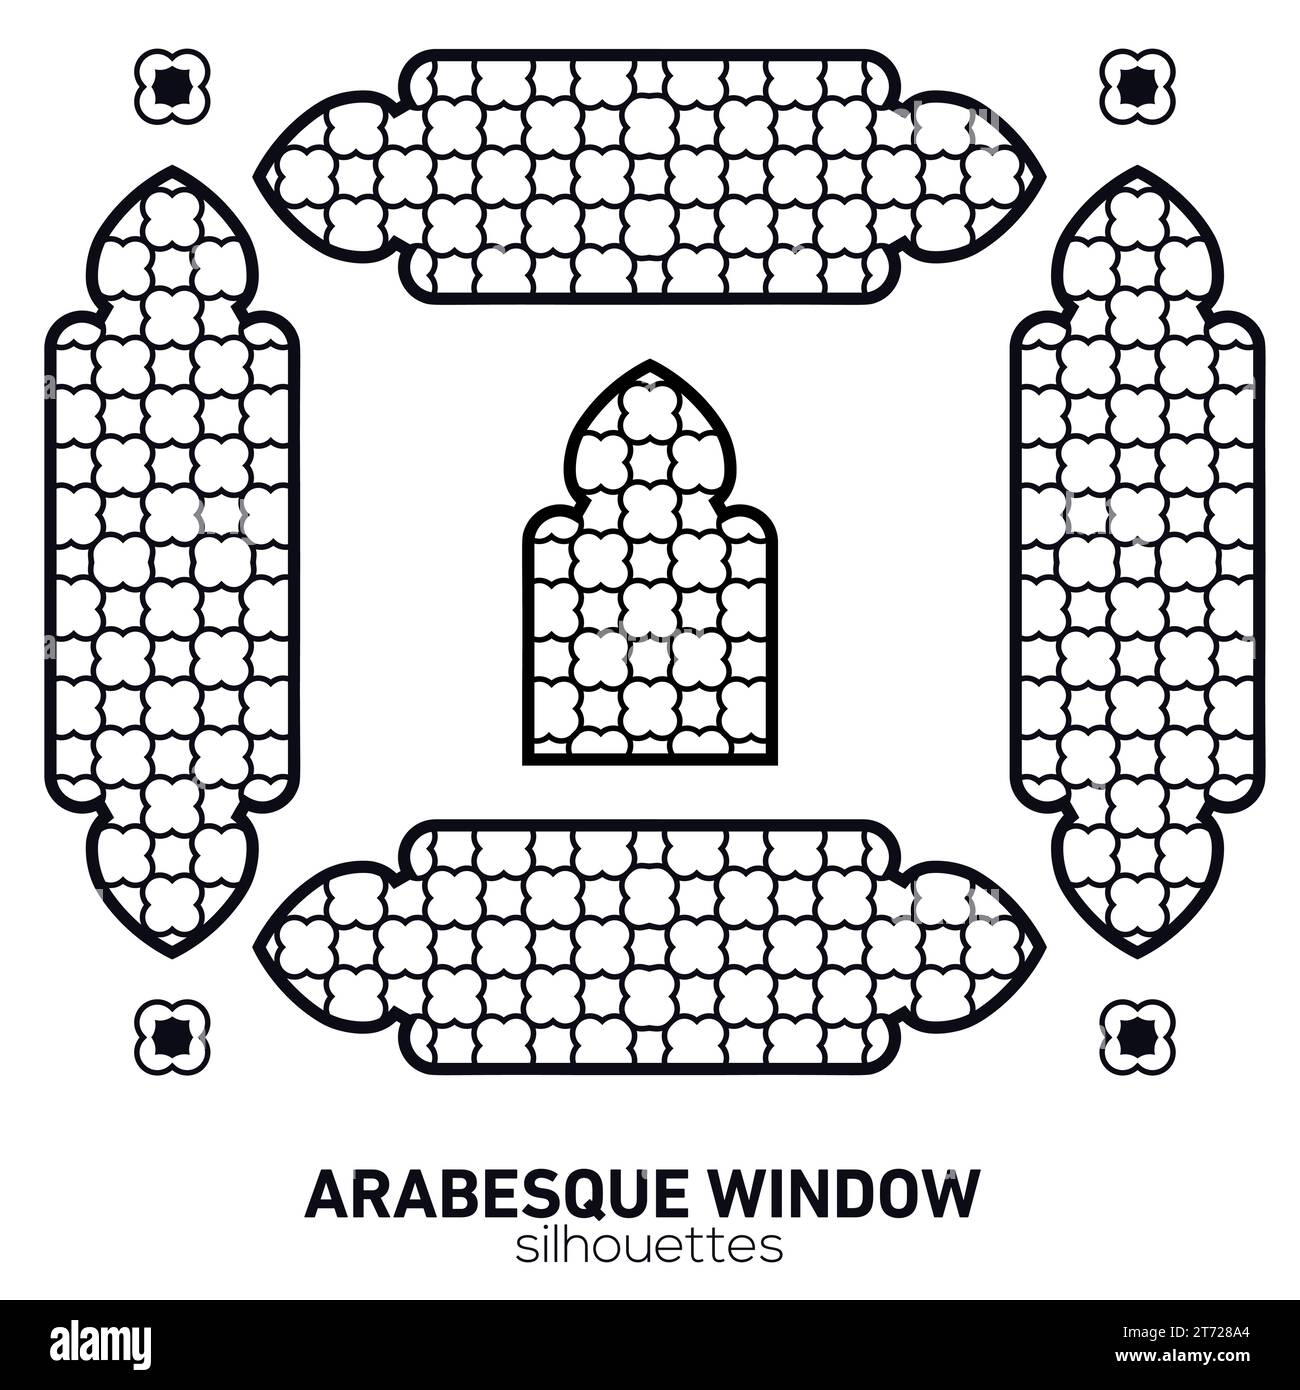 Silhouettes de fenêtres arabesques. Symbole vectoriel arches islamiques traditionnelles. Architecture traditionnelle arabe. Élément de design Ramadan Kareem. Illustration de Vecteur